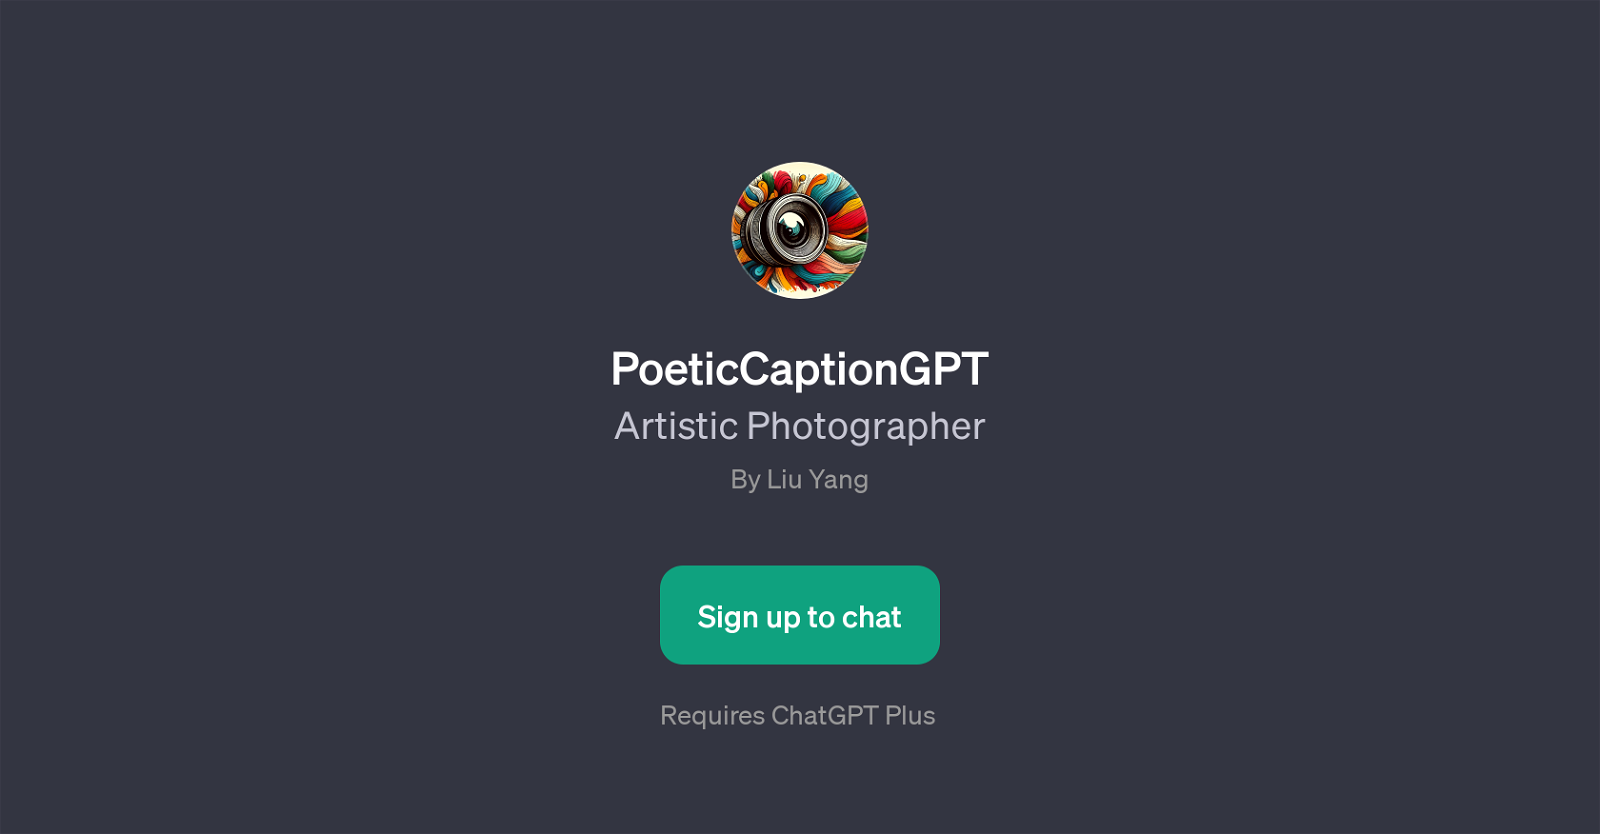 PoeticCaptionGPT website